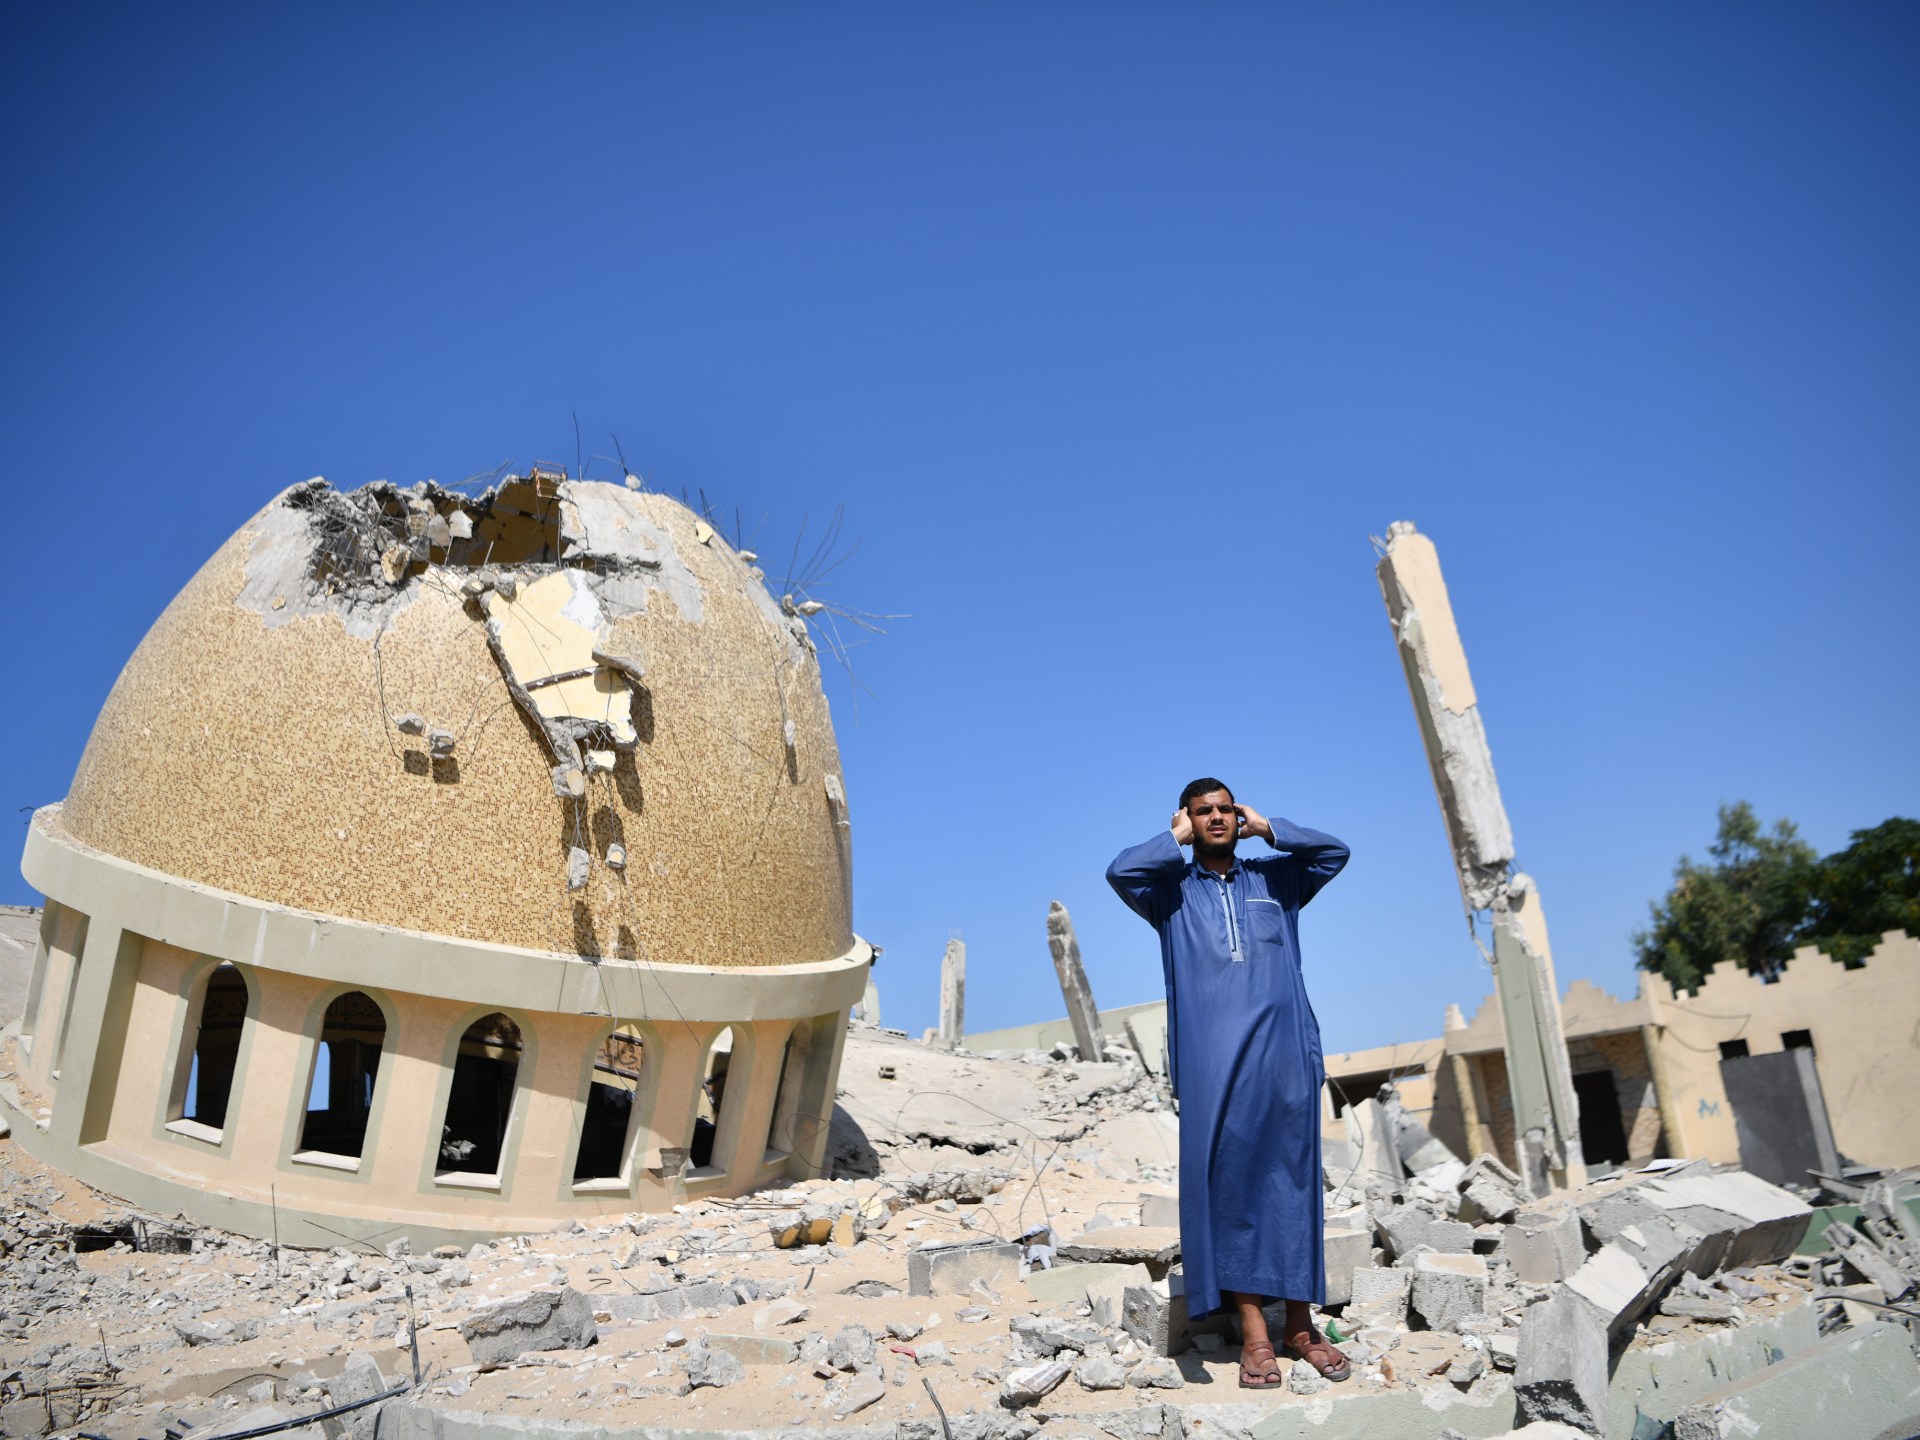 غزة.. الاحتلال يدمر 31 مسجدا وأضرار بالغة في 3 كنائس | أخبار – البوكس نيوز